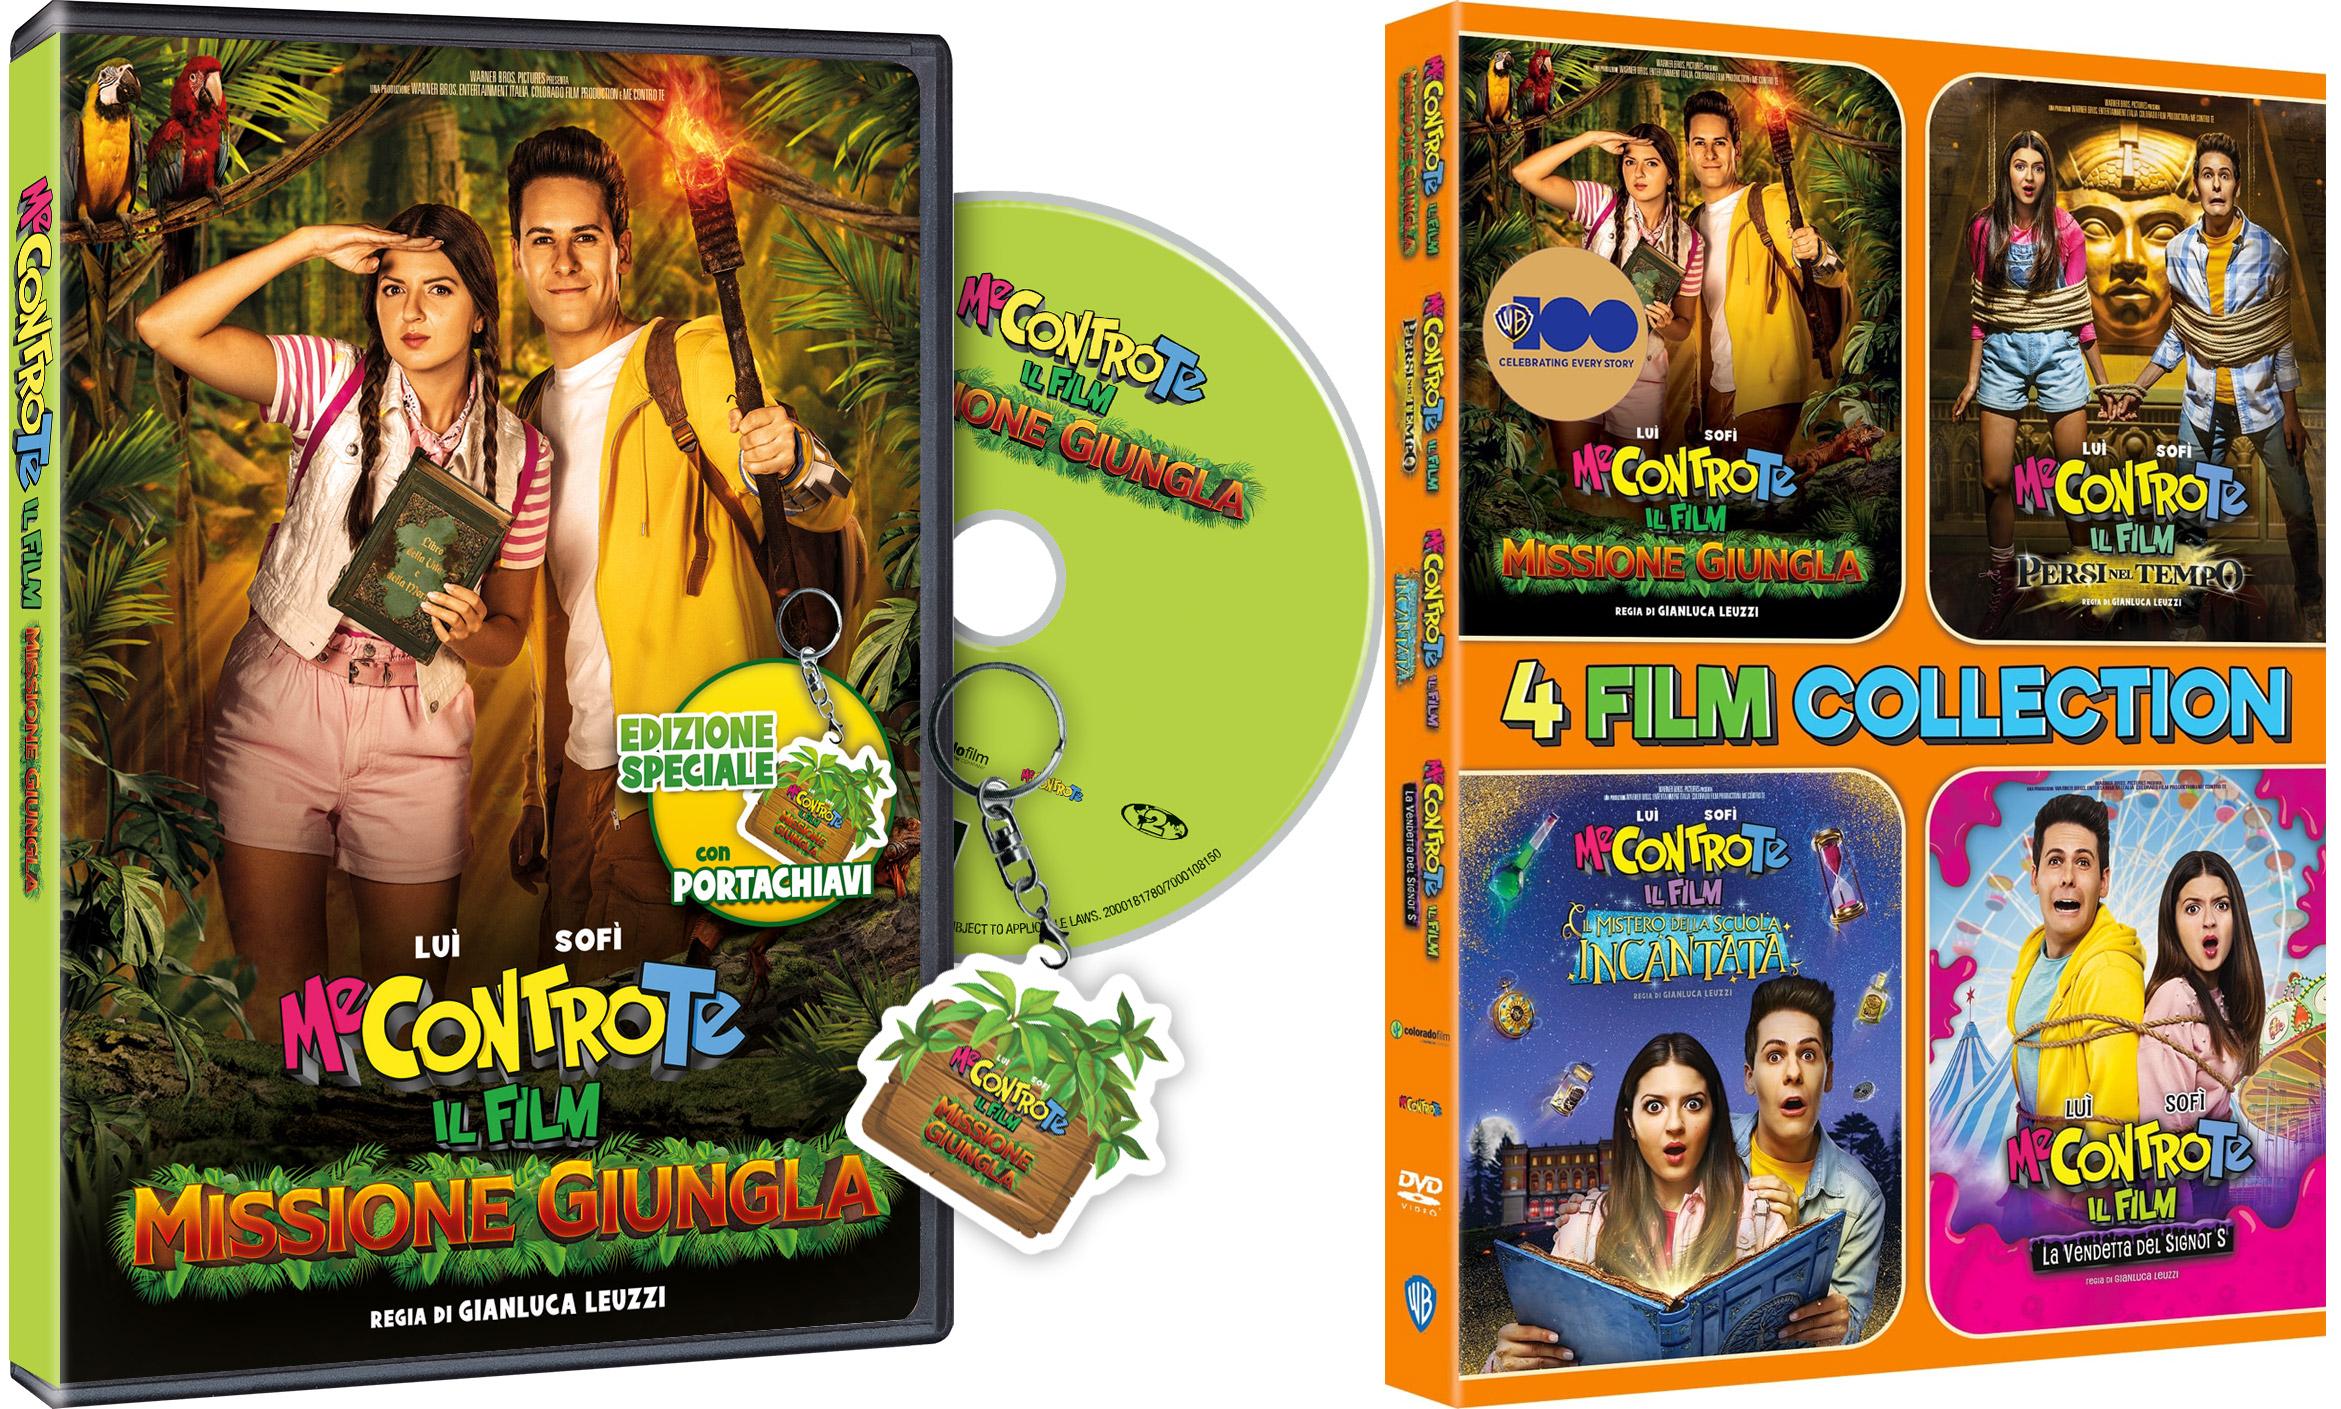 Me Contro Te Il Film - Missione Giungla in edizione speciale DVD con portachiavi e cofanetto con tutti i quattro film